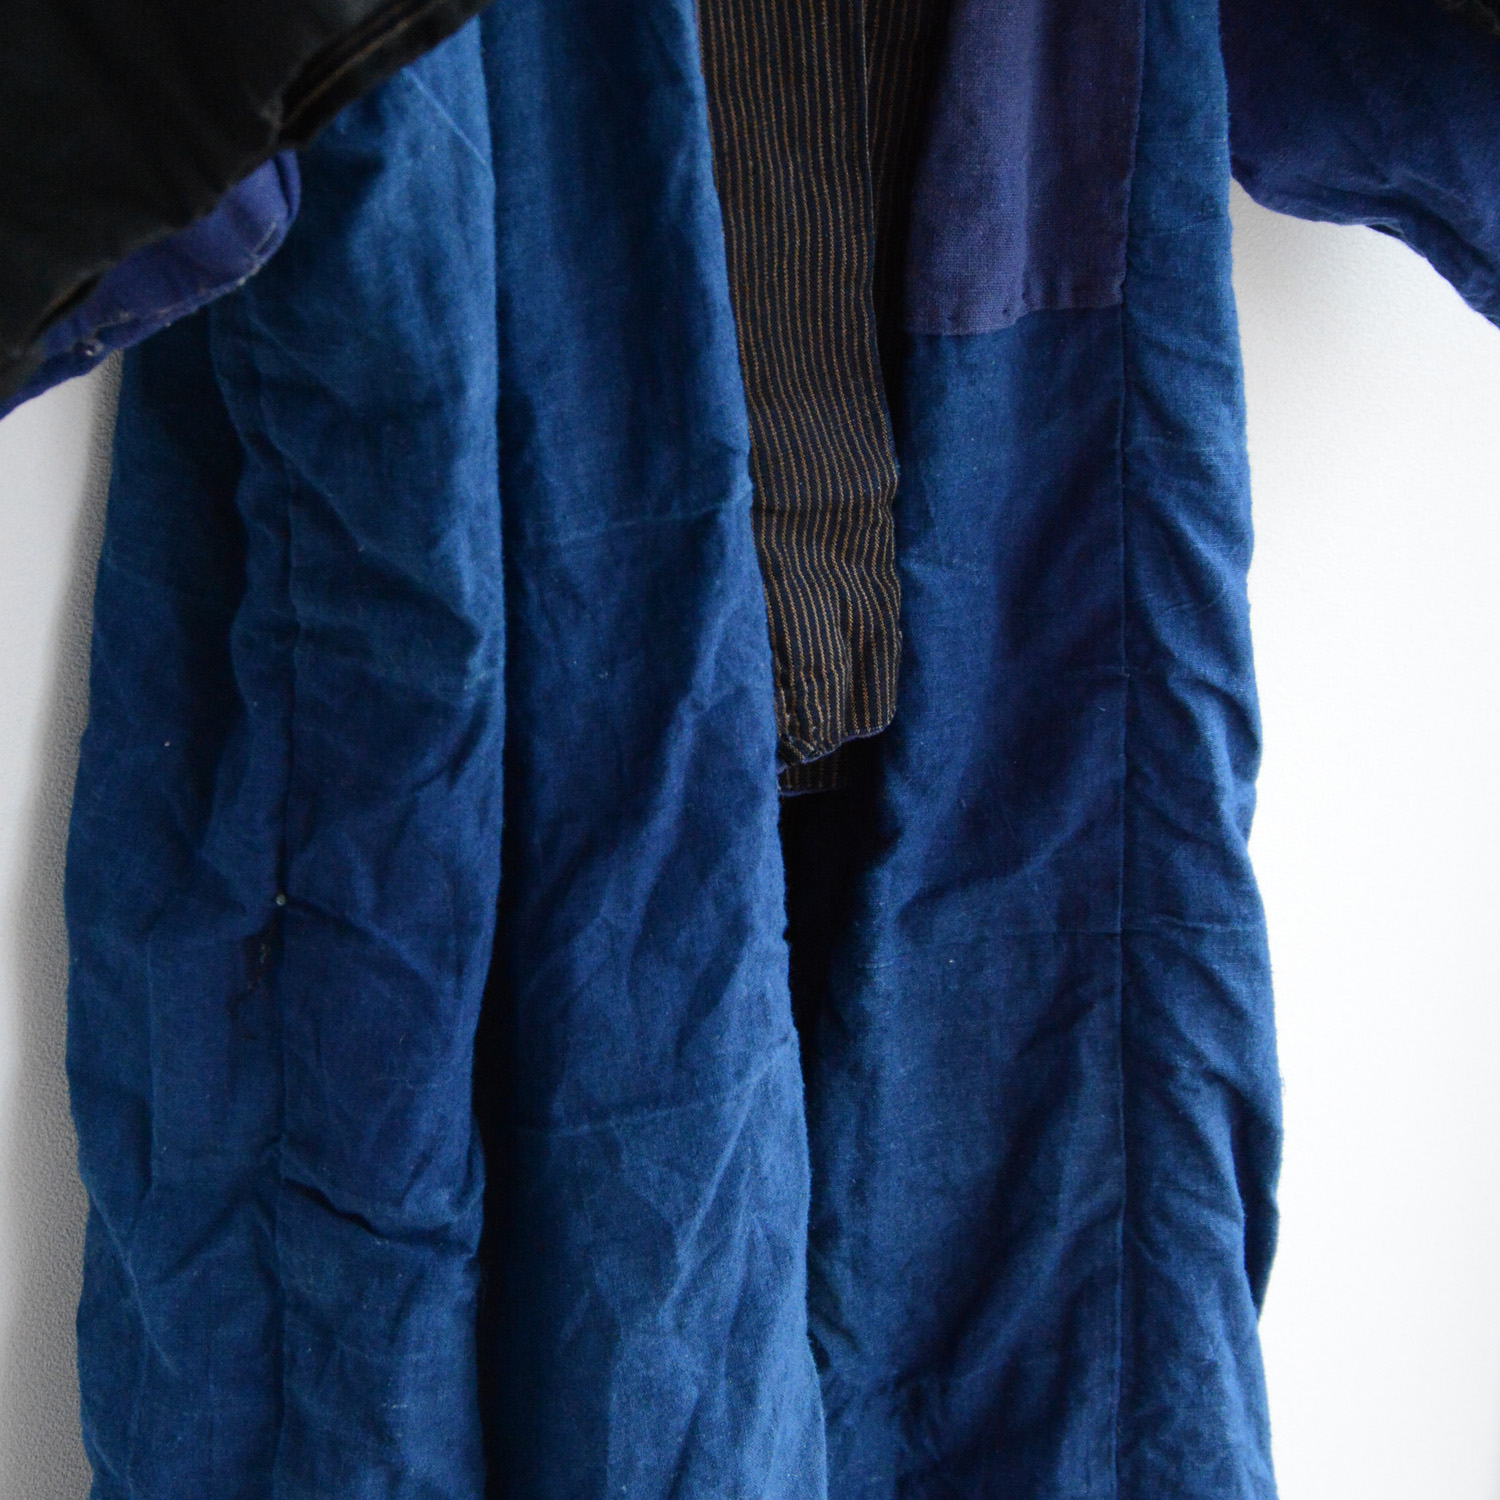 絣 着物 藍染 襤褸 クレイジーパターン 木綿 ジャパンヴィンテージ